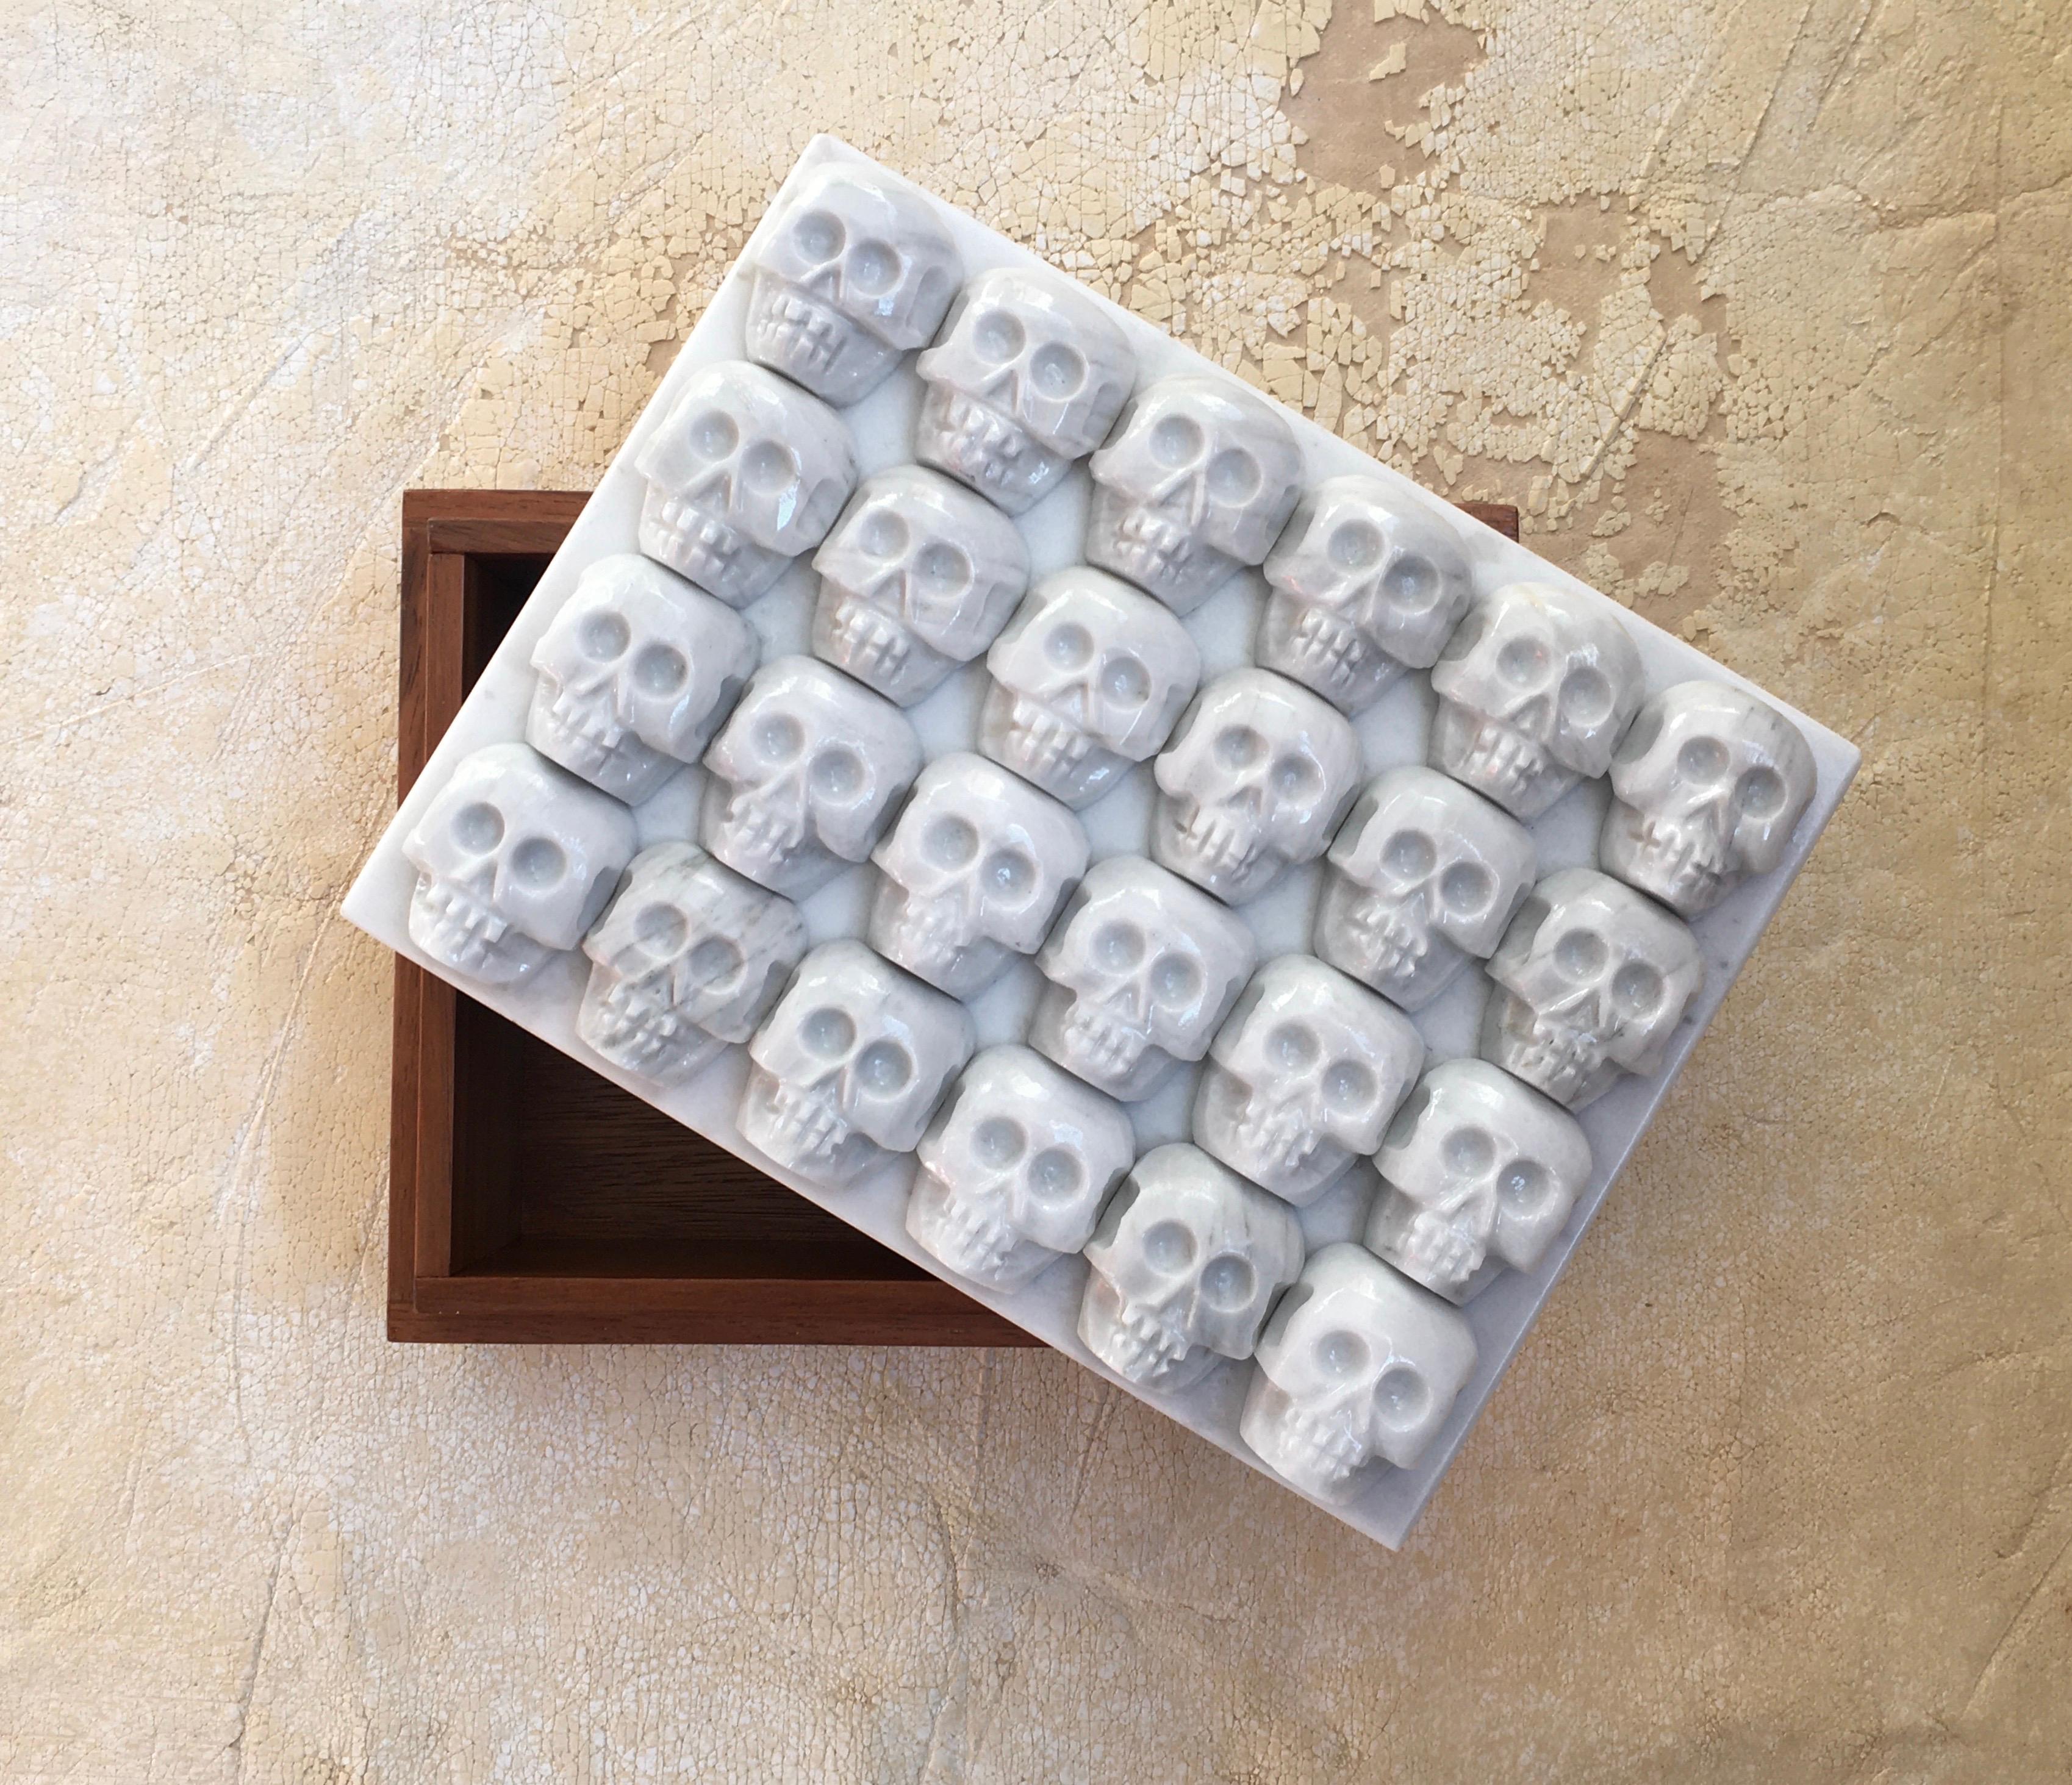 Boîte Tzompantli d'Onora
Dimensions : 25 x 25 x 18 cm
Matériaux : obsidienne ou marbre sculpté.

La boîte Tzompantli fait référence aux Altars élevés en l'honneur des sacrifices humains rendus aux dieux aztèques. Il est fabriqué à partir de